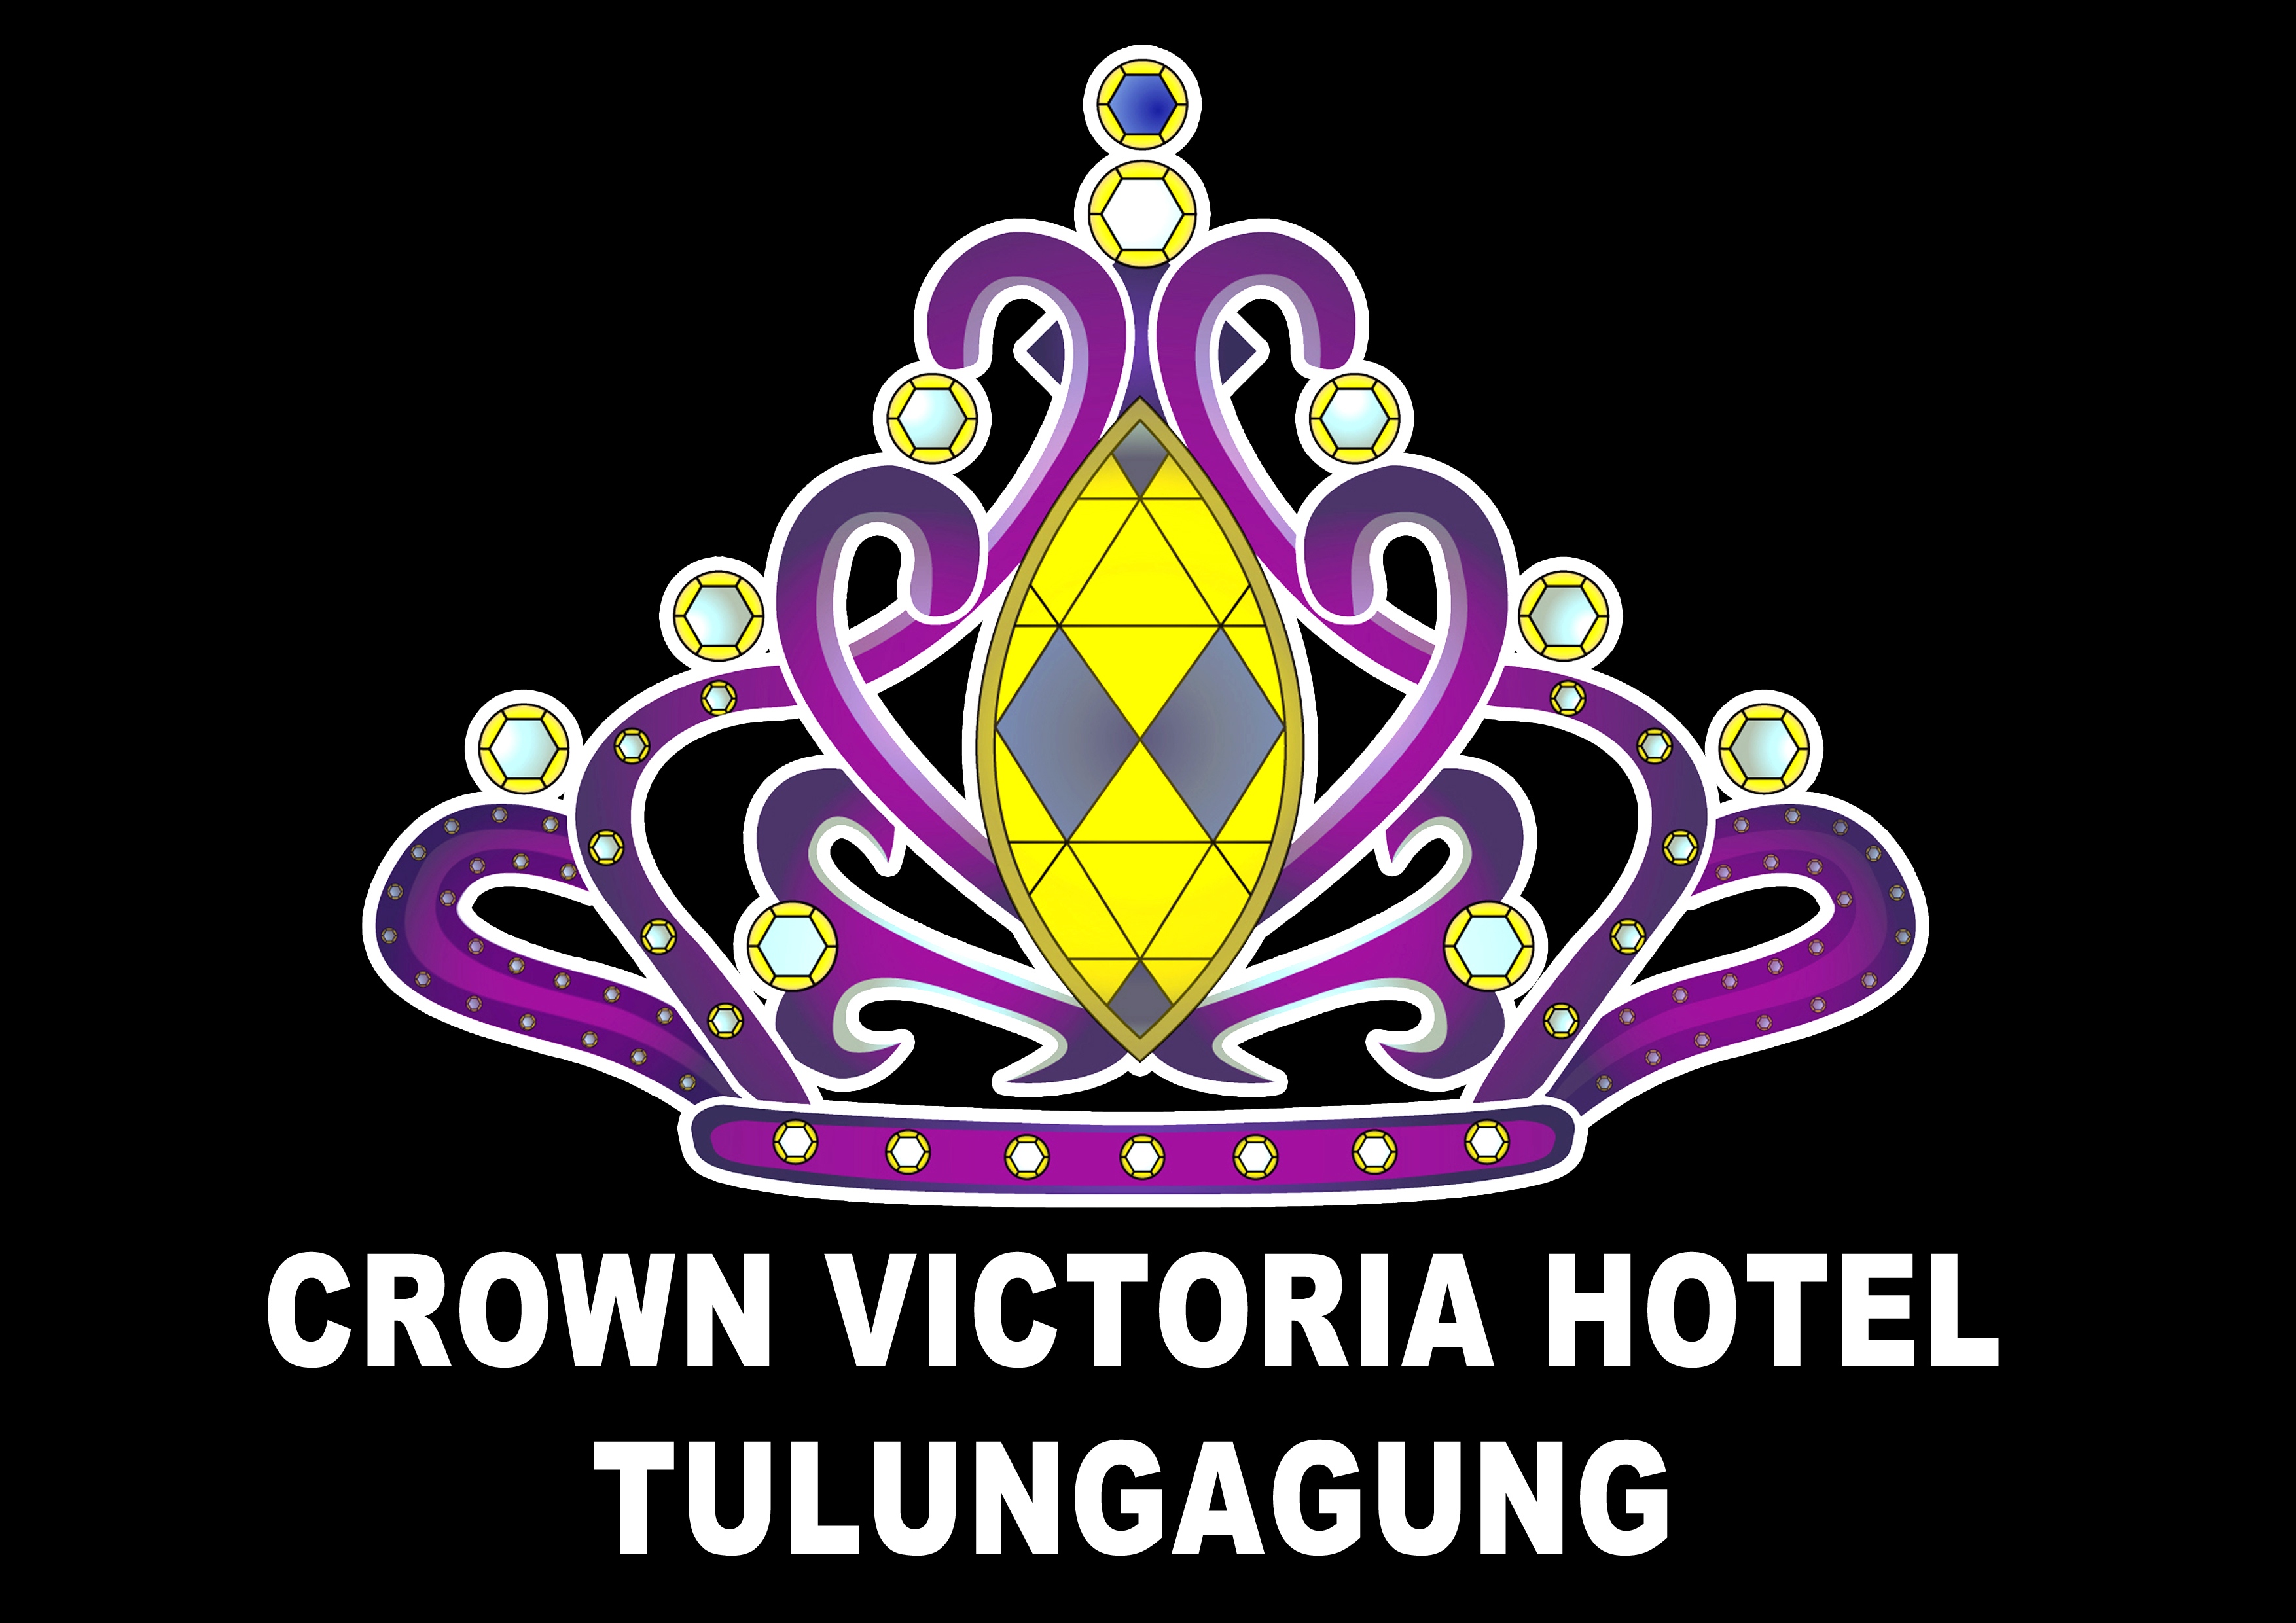 Crown Casino Victoria